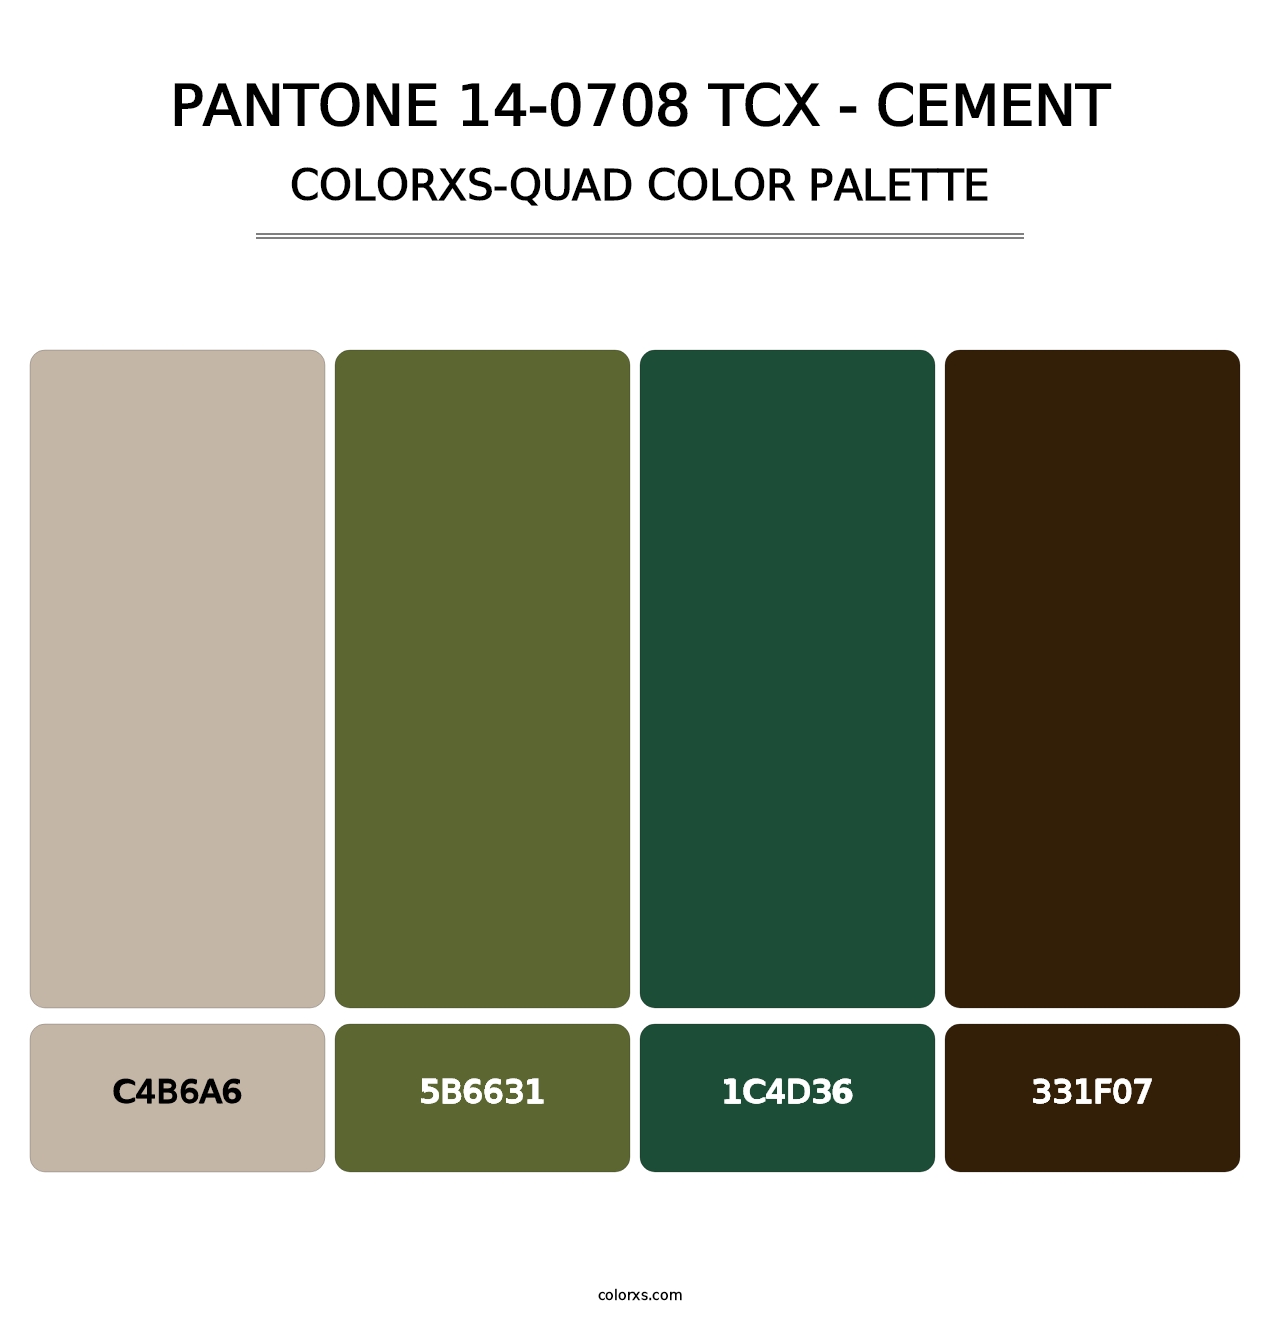 PANTONE 14-0708 TCX - Cement - Colorxs Quad Palette